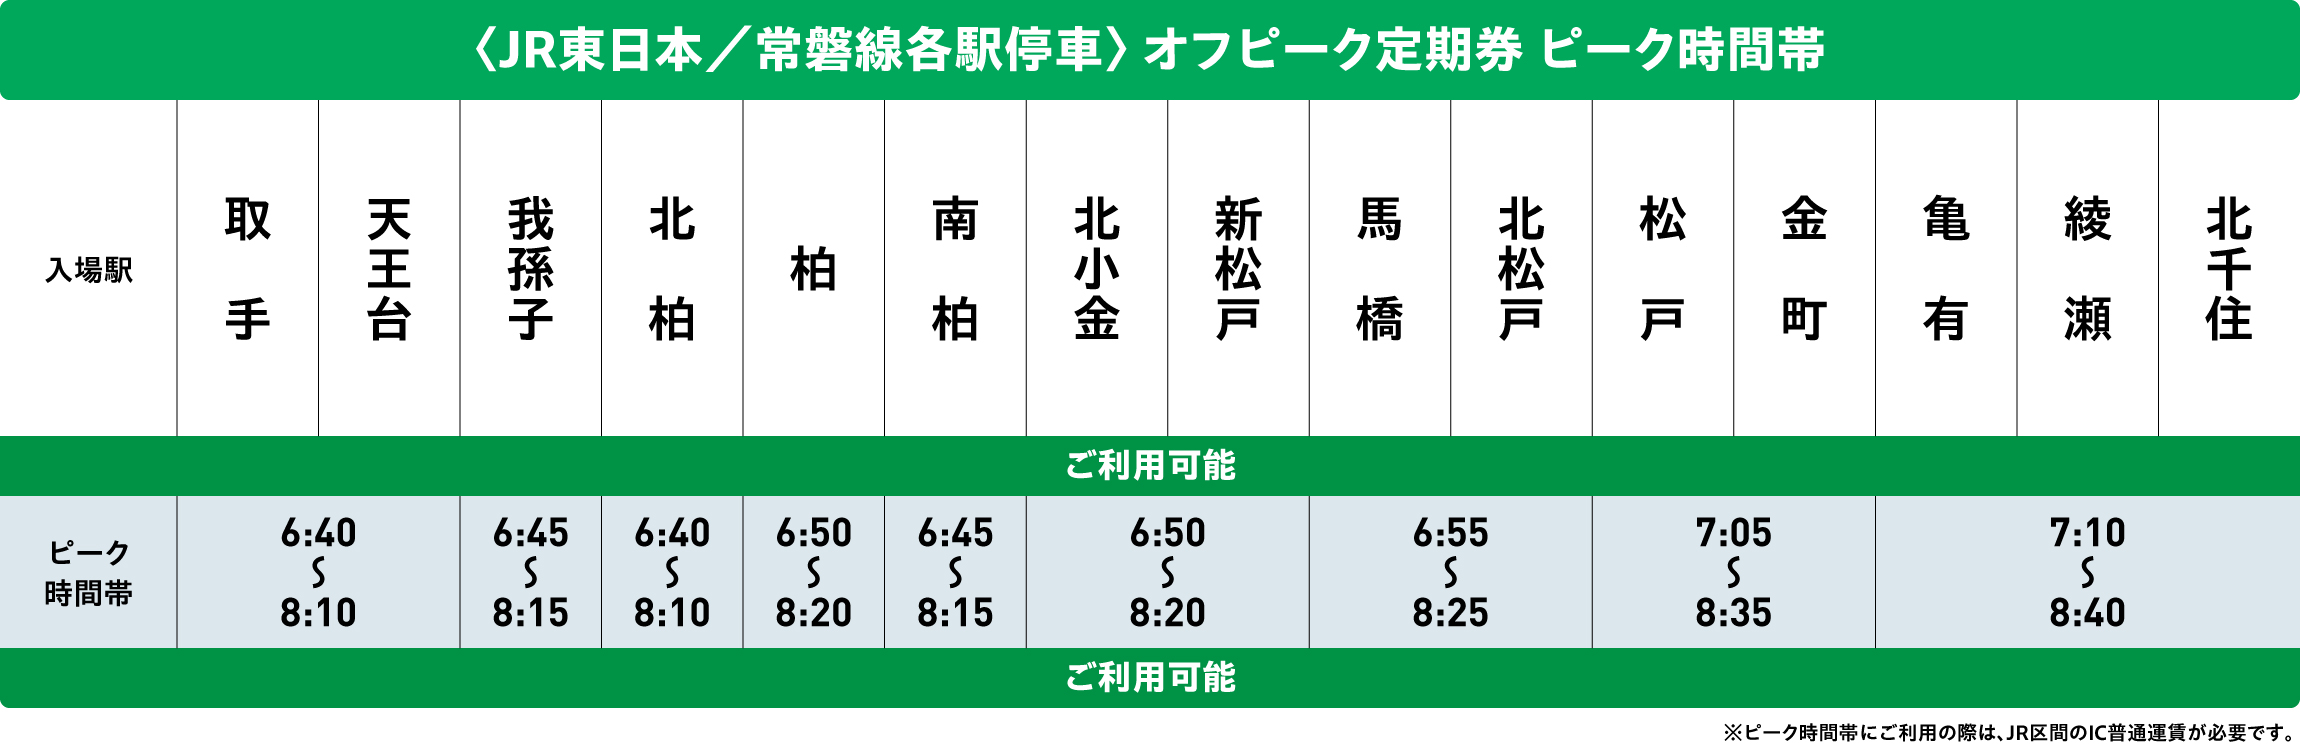 常磐線各駅停車オフピークポイントサービス対象時間帯